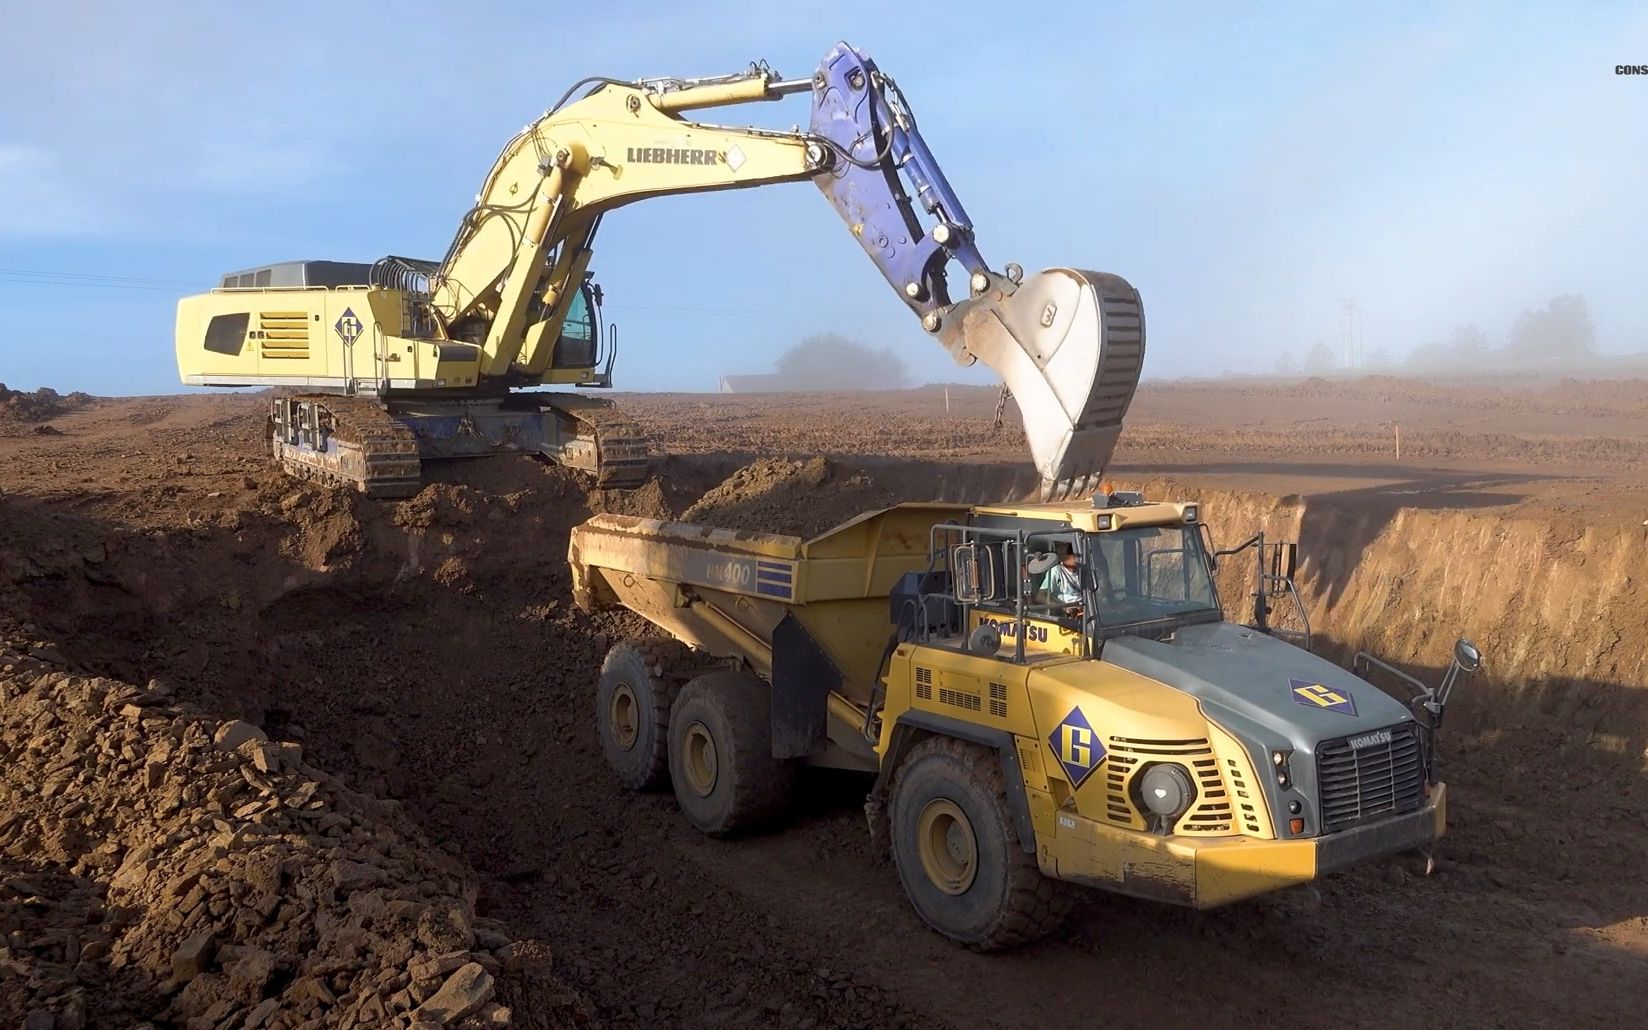 【挖掘机】利勃海尔r976矿用反铲挖掘机取土作业